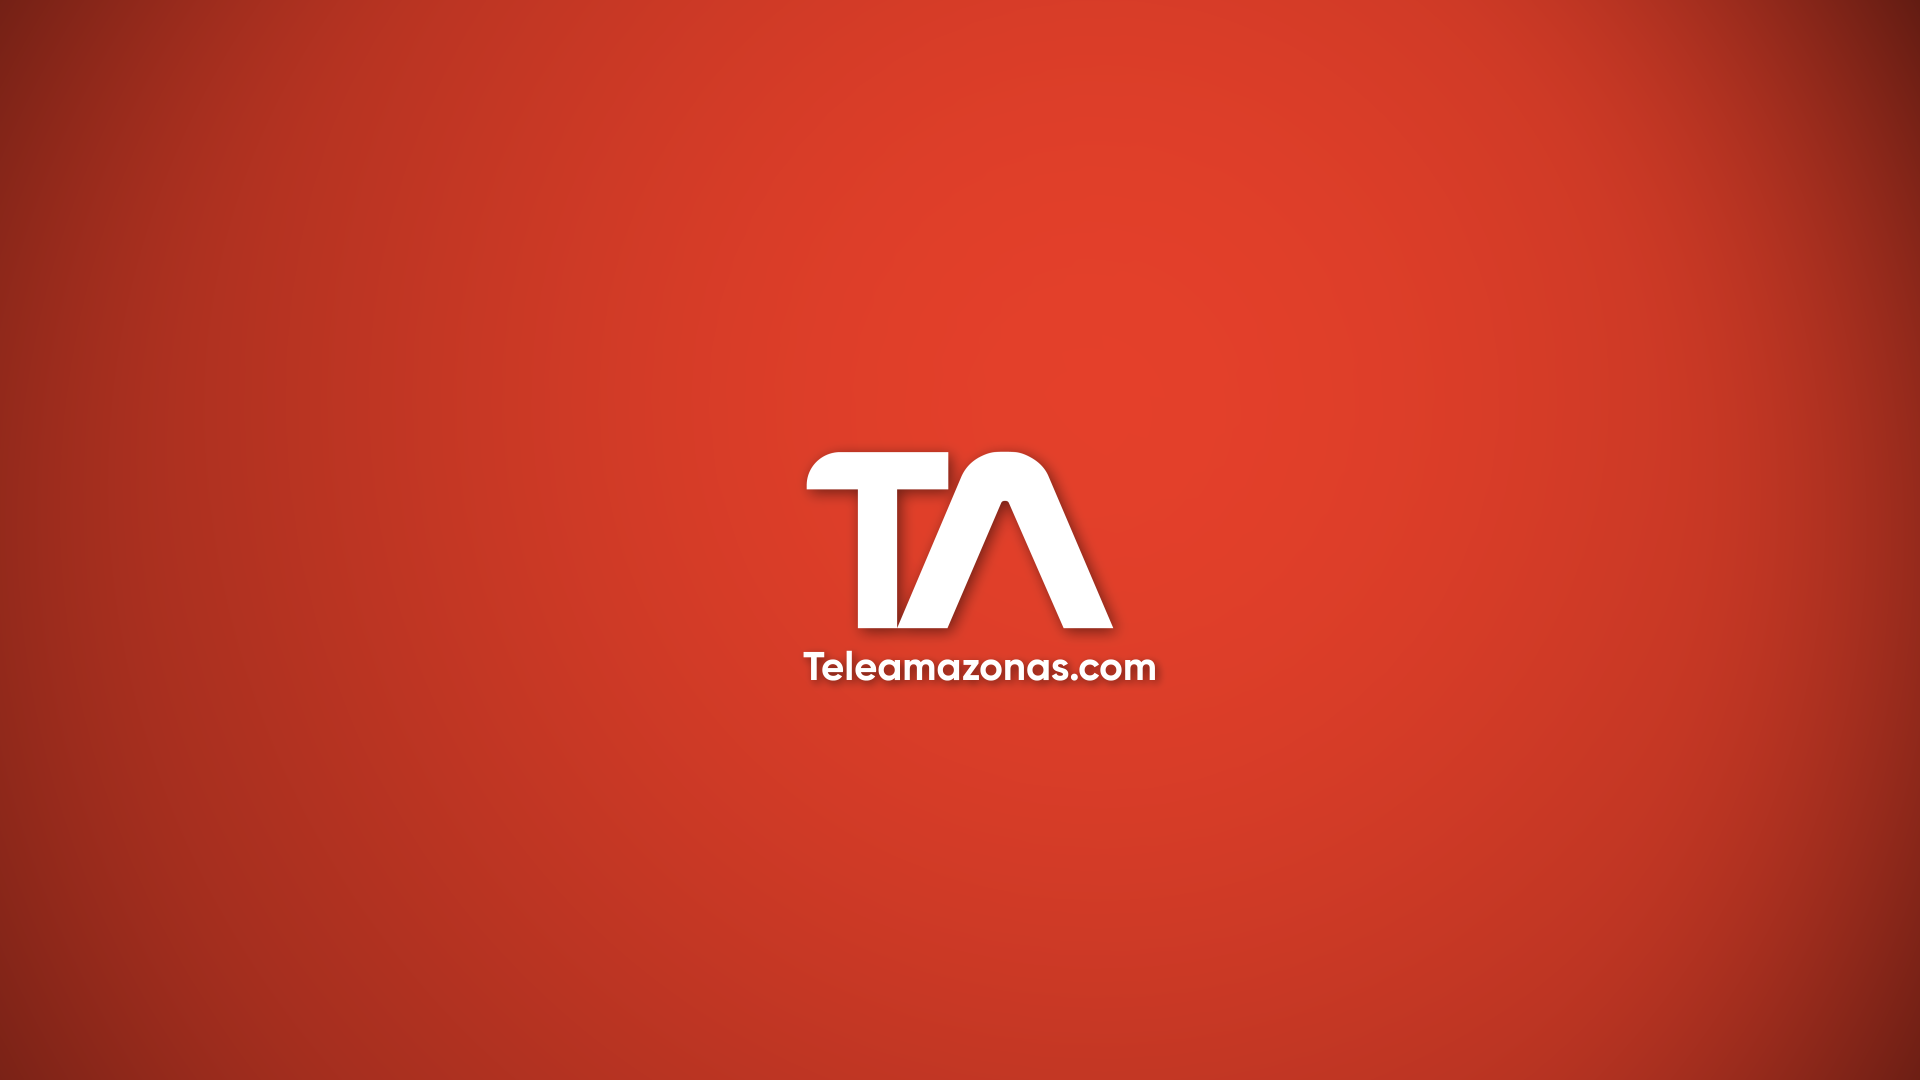 www.teleamazonas.com